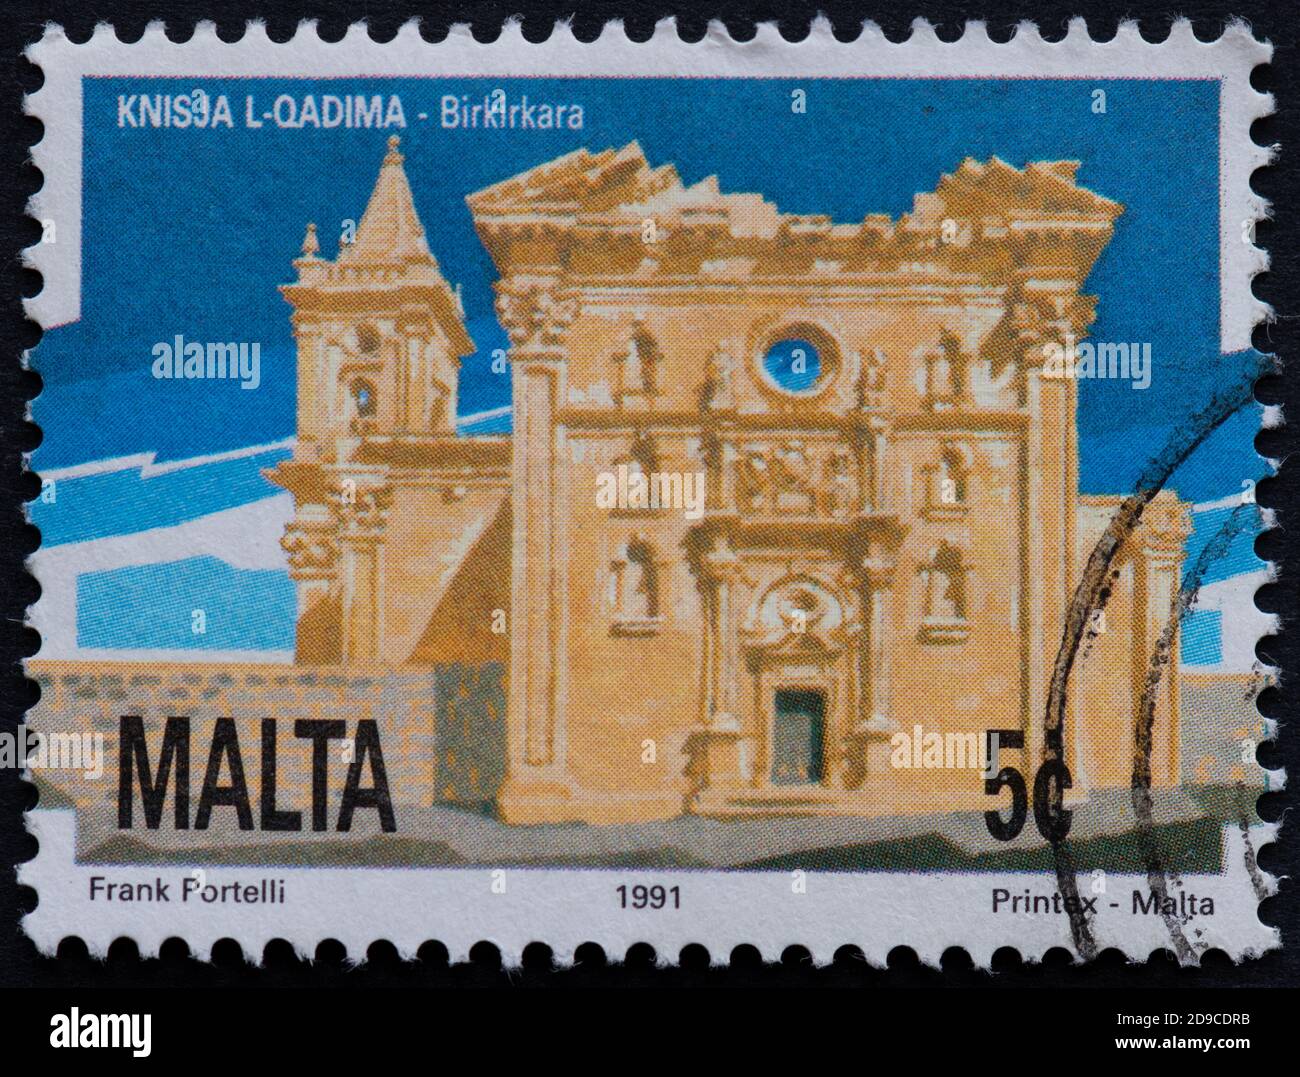 Pfarrkirche Mariä Himmelfahrt, Birkirkara, Malta - 5c Briefmarke Stockfoto